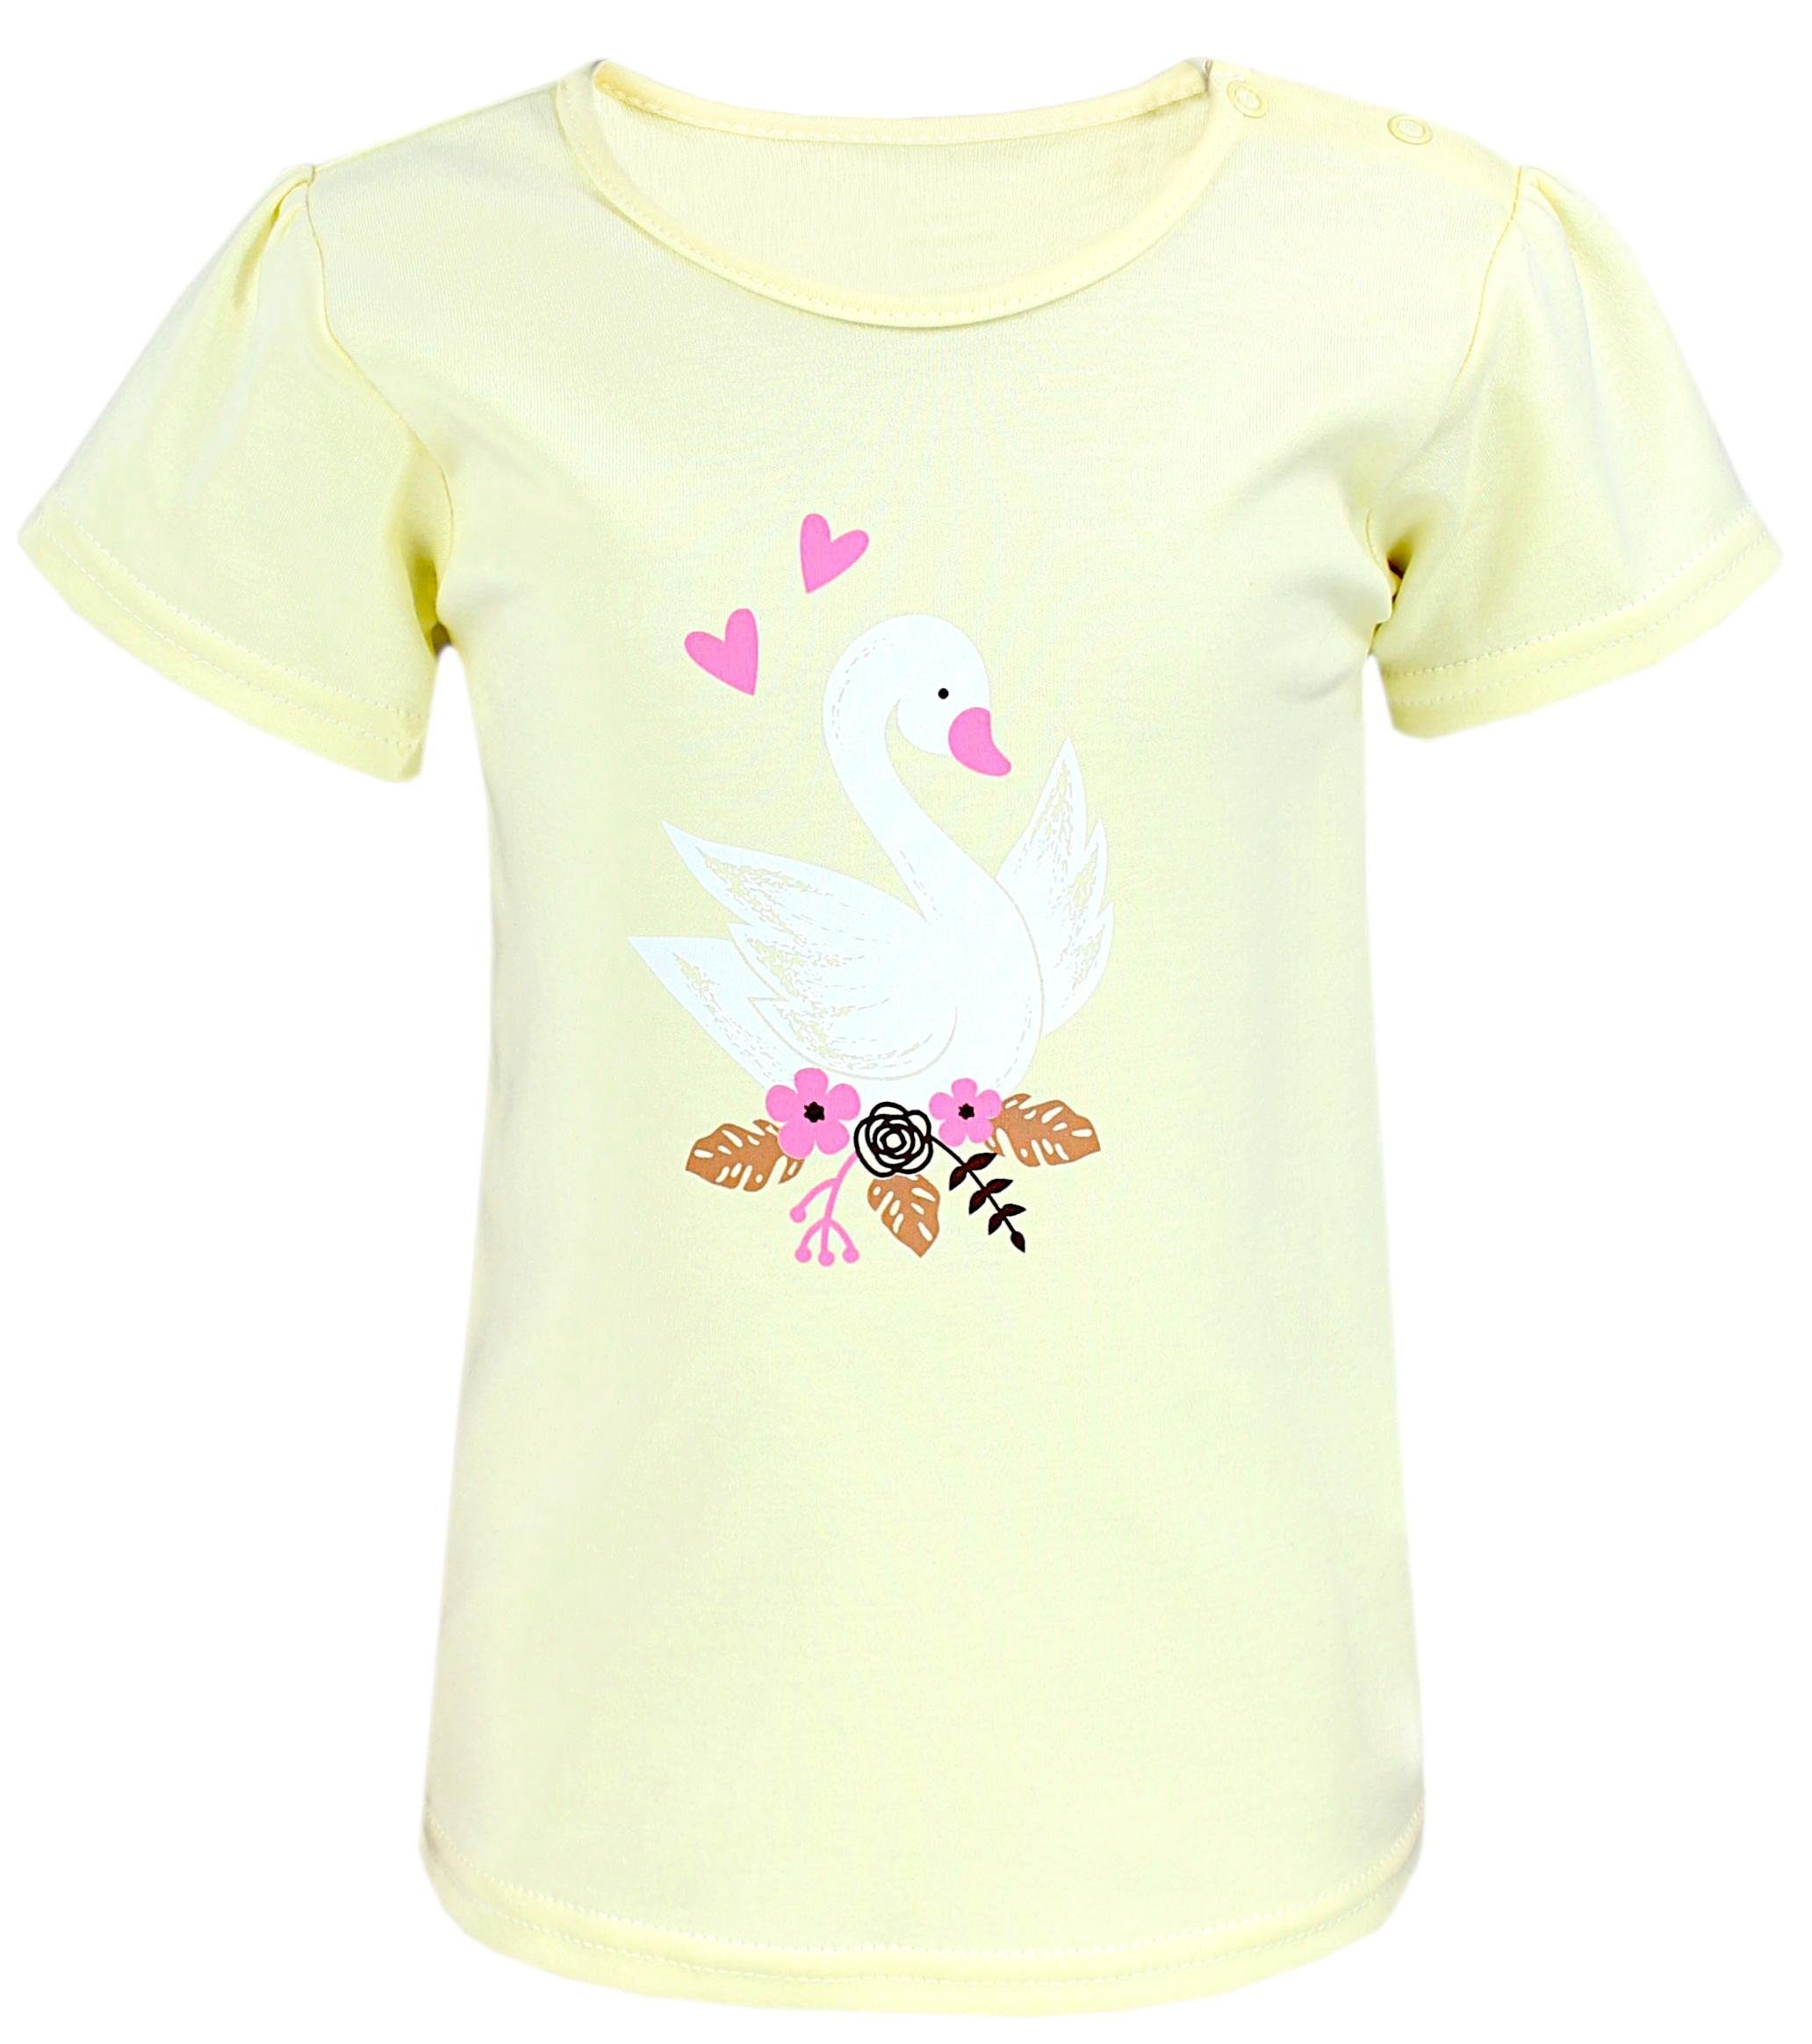 Gemustert Bunt T-Shirt Perfect Rosa TupTam Unicorn Gelb Schwan Kurzarm T-Shirt Mädchen Weiß Miss TupTam Baby Set 5er